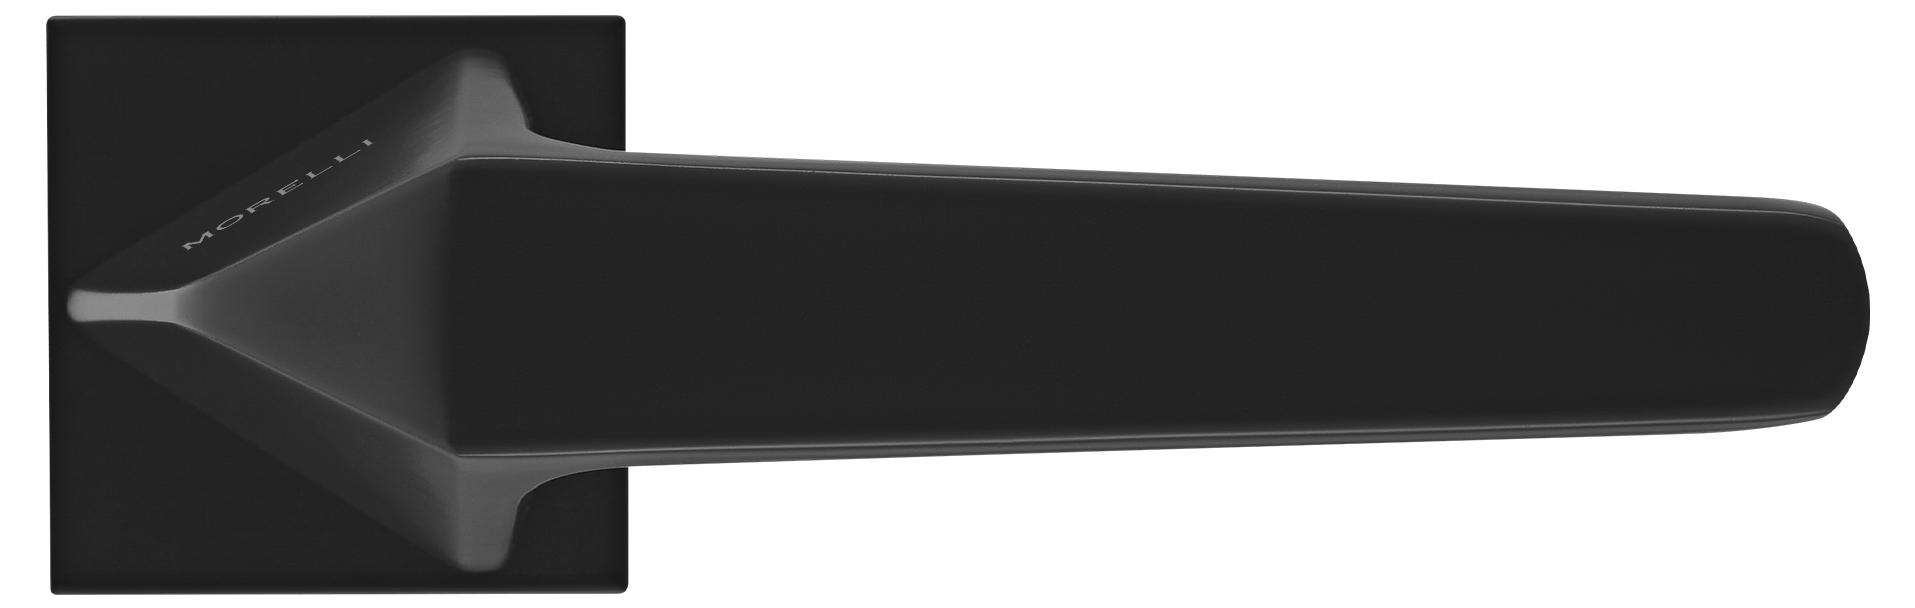 SOUK ручка дверная на квадратной розетке 6 мм, MH-55-S6 BL, цвет - черный фото купить в Набережных Челнах